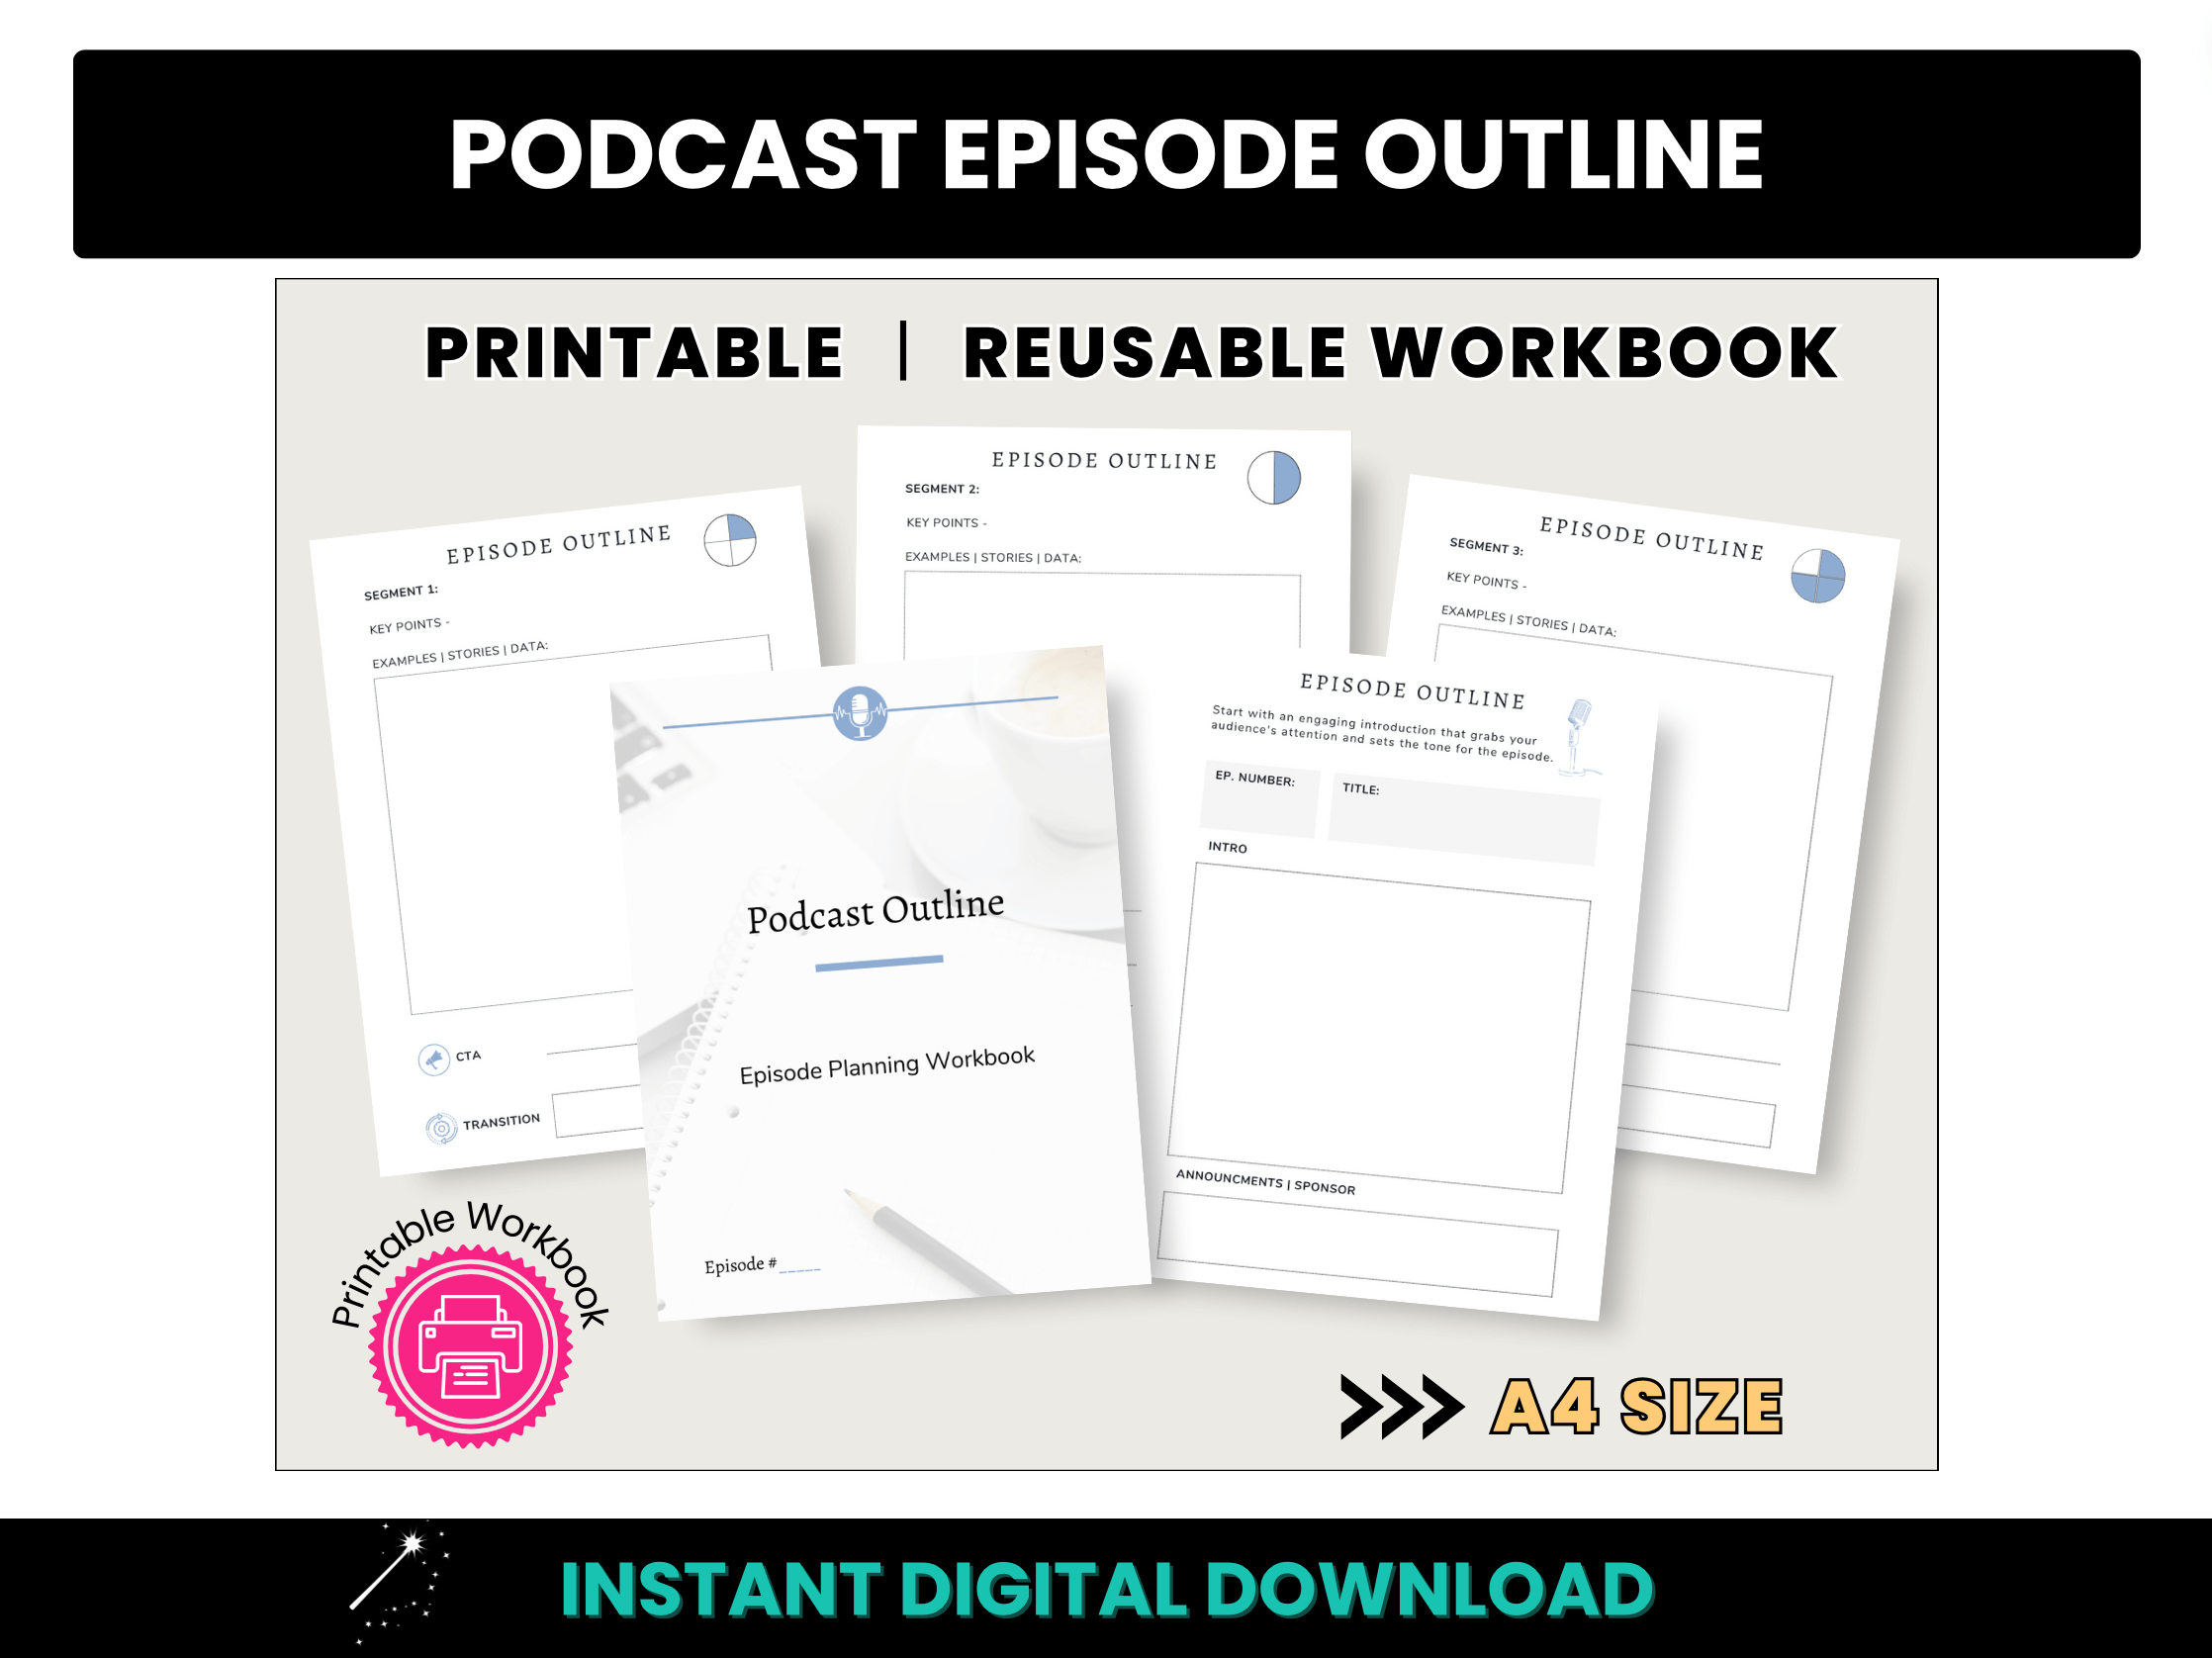 A4 Podcast Episode Outline Workbook